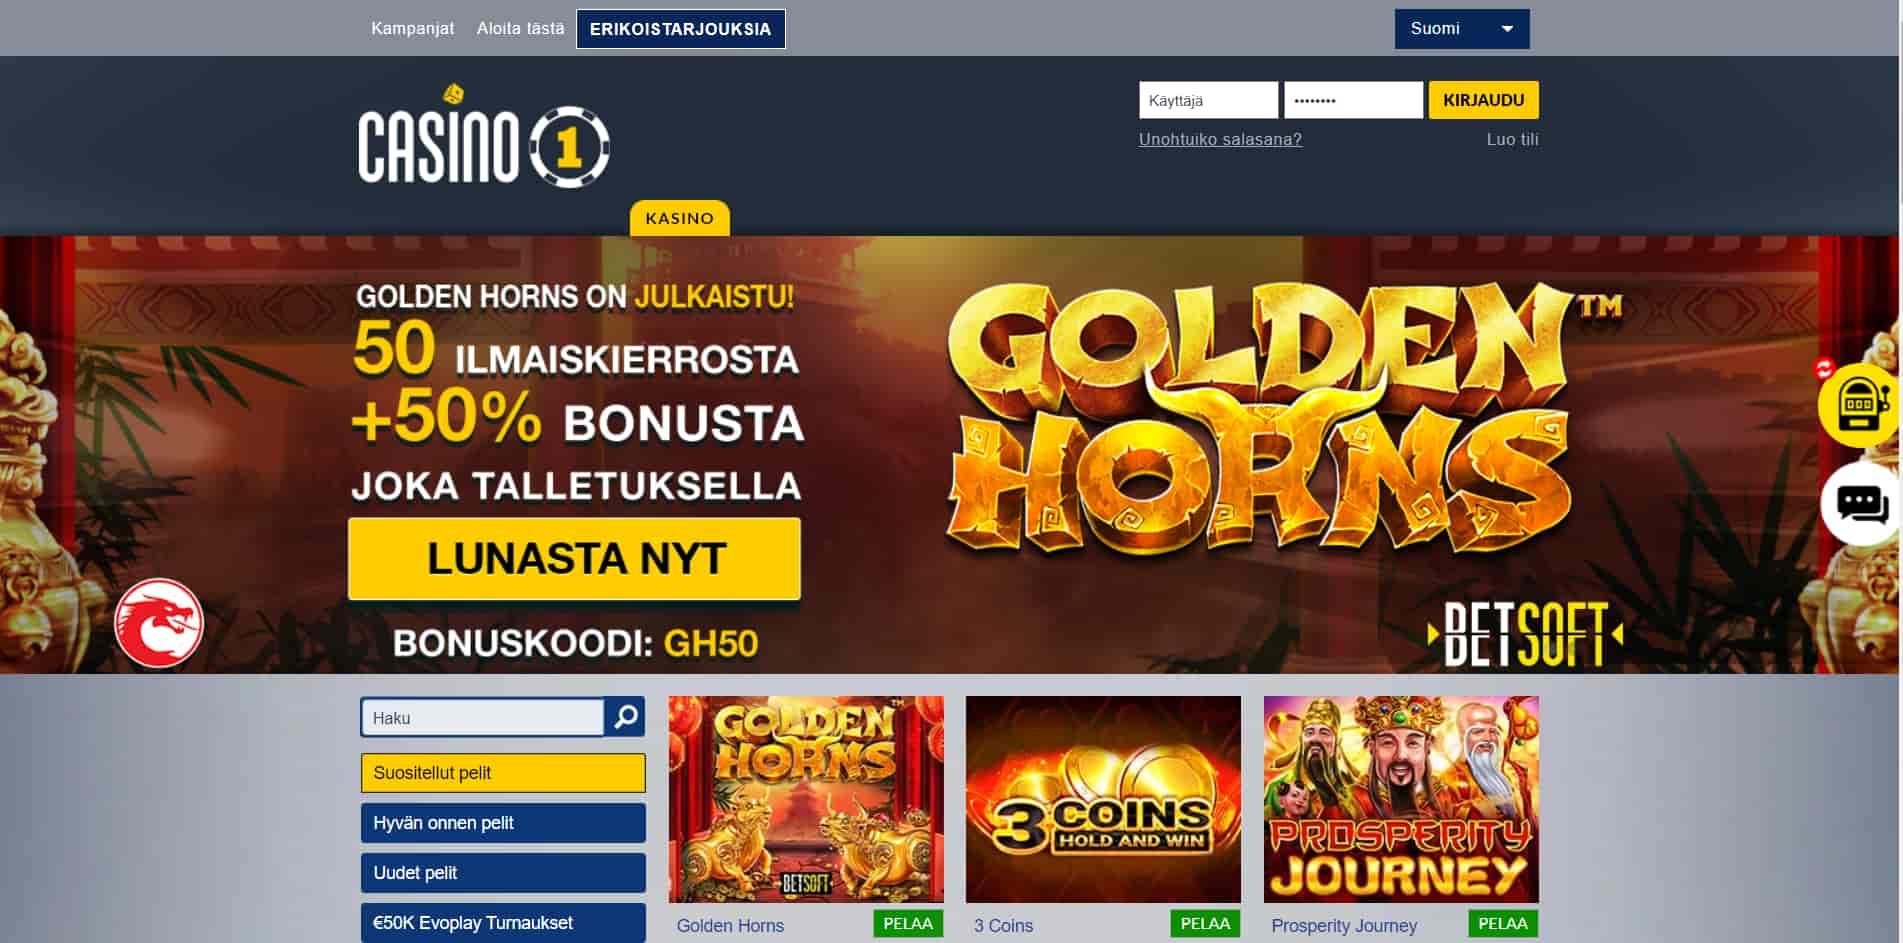 Casino1 casino homepage